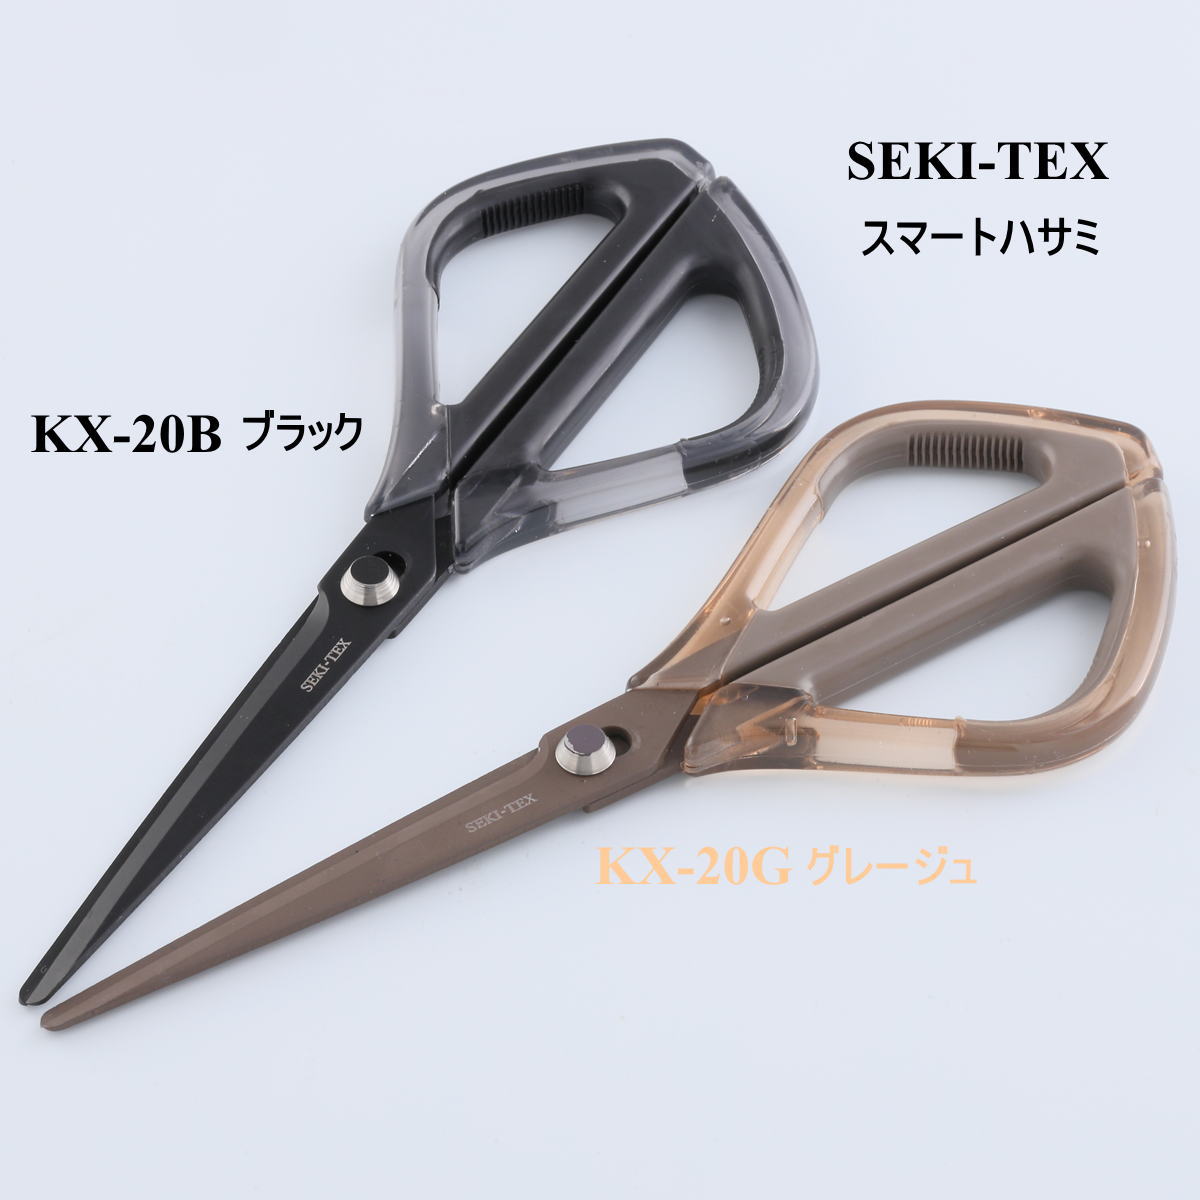 SEKI-TEX スマートはさみ 関の刃物 事